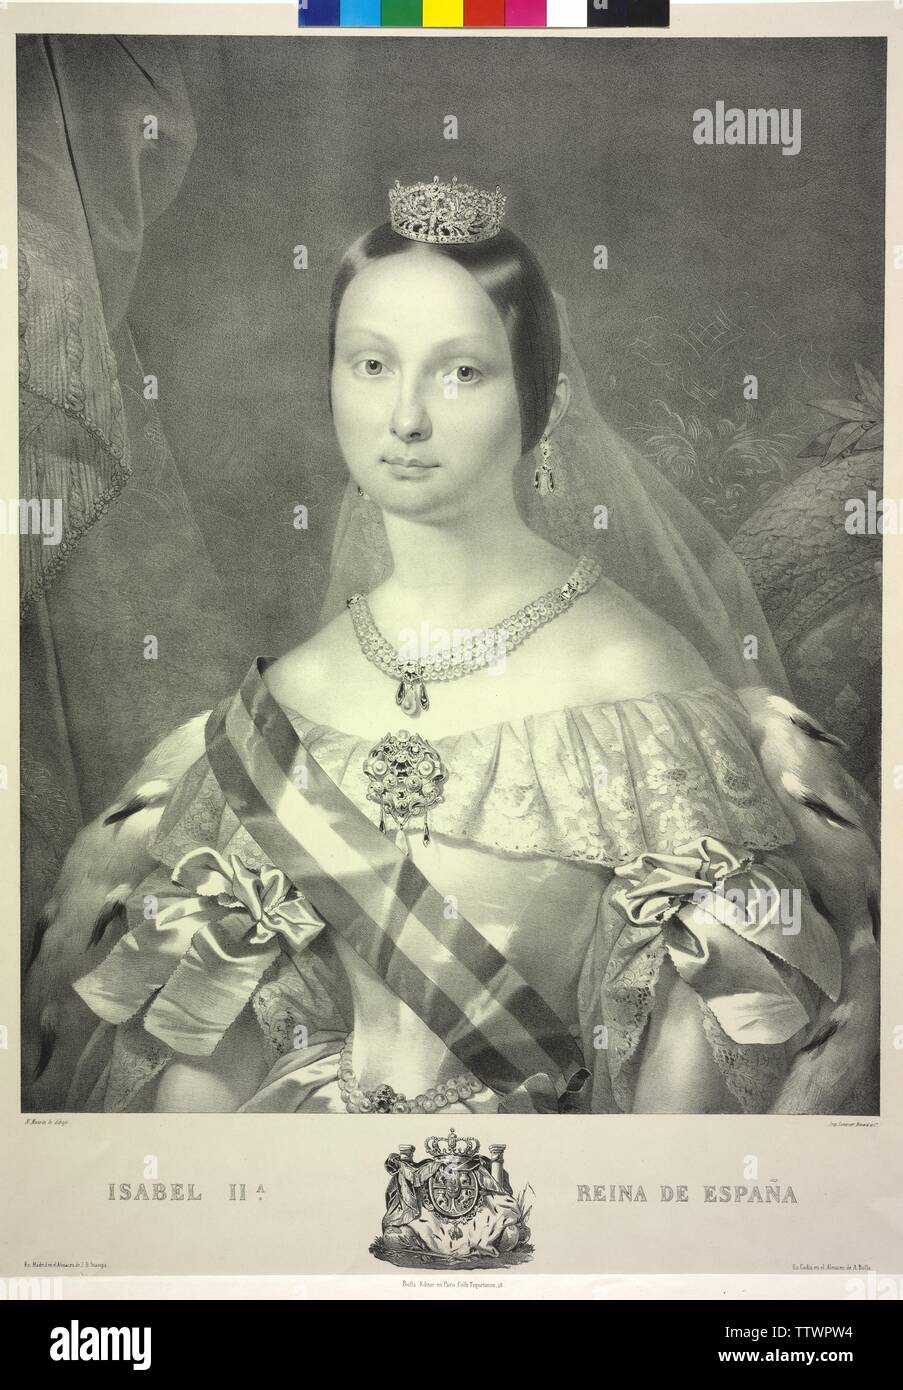 Isabella II., Königin von Spanien, Lithographie von Nicolas Eustache Maurin. Wappen, Additional-Rights - Clearance-Info - Not-Available Stockfoto